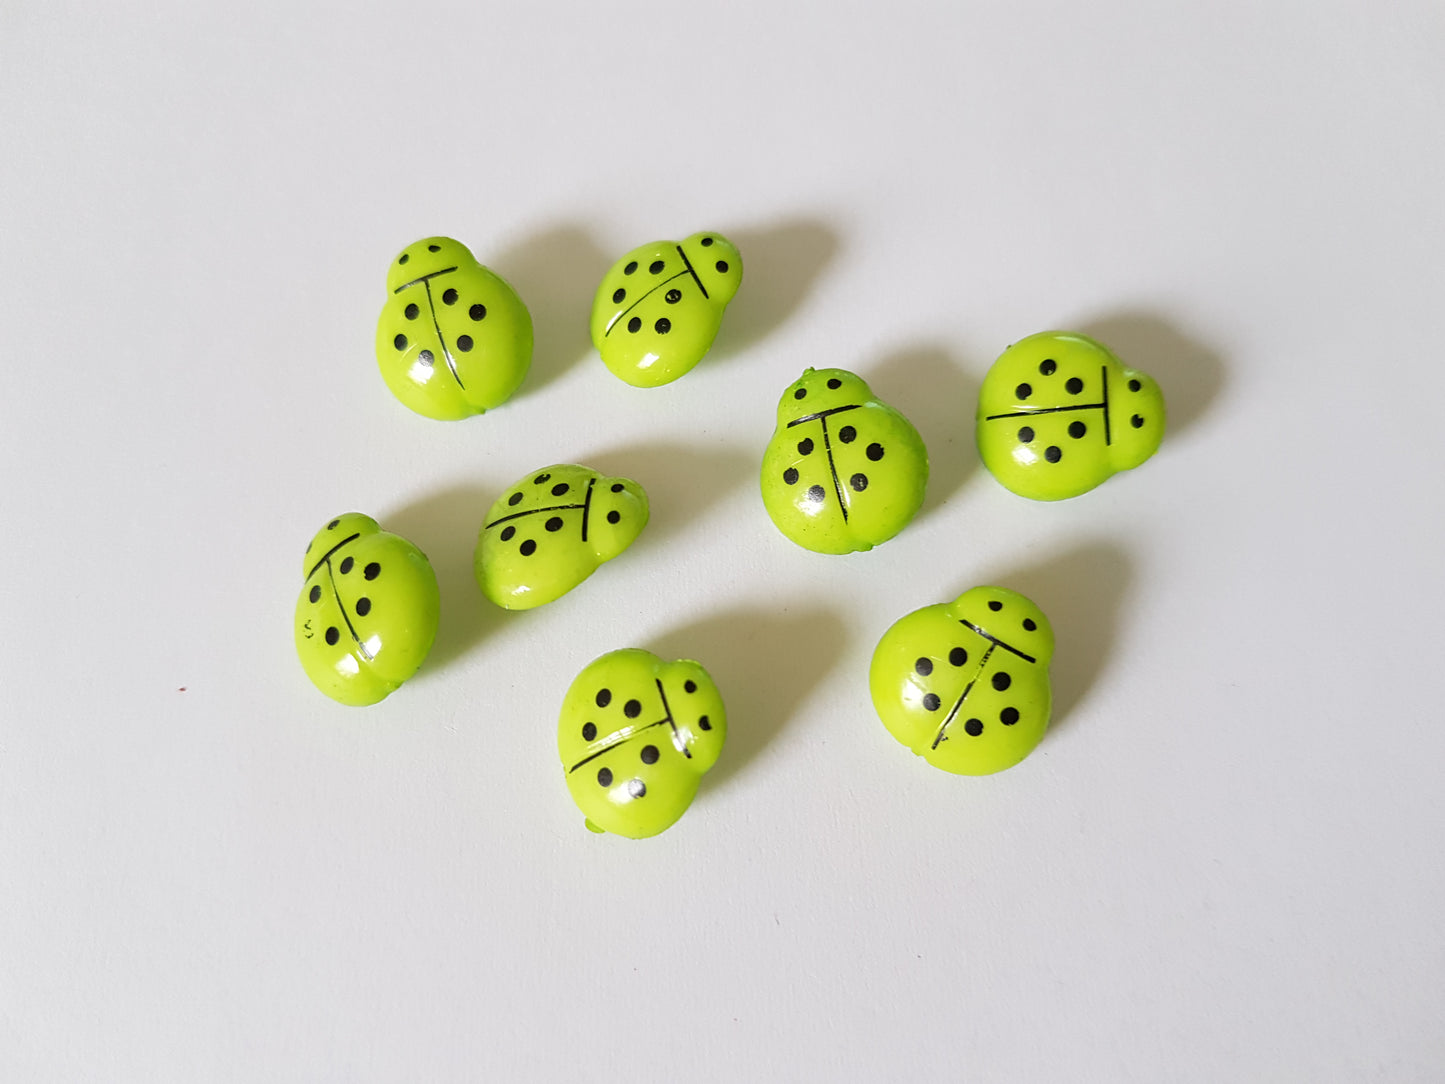 14mm acrylic ladybird buttons - green